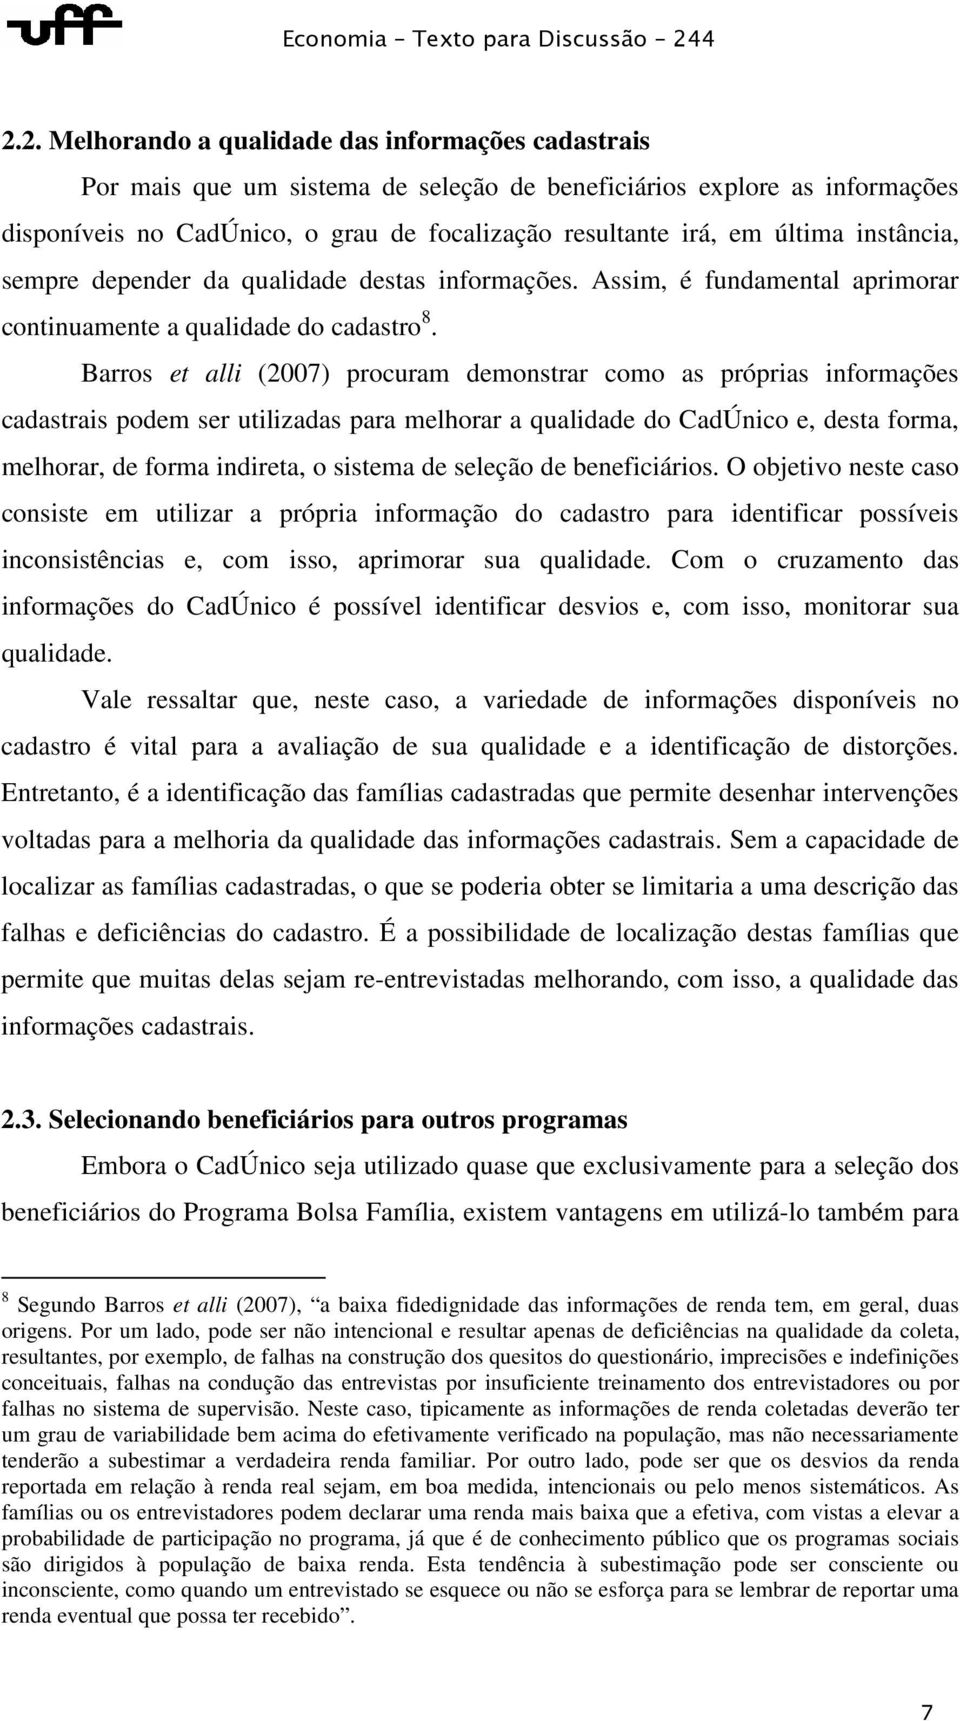 Barros et alli (2007) procuram demonstrar como as próprias informações cadastrais podem ser utilizadas para melhorar a qualidade do CadÚnico e, desta forma, melhorar, de forma indireta, o sistema de